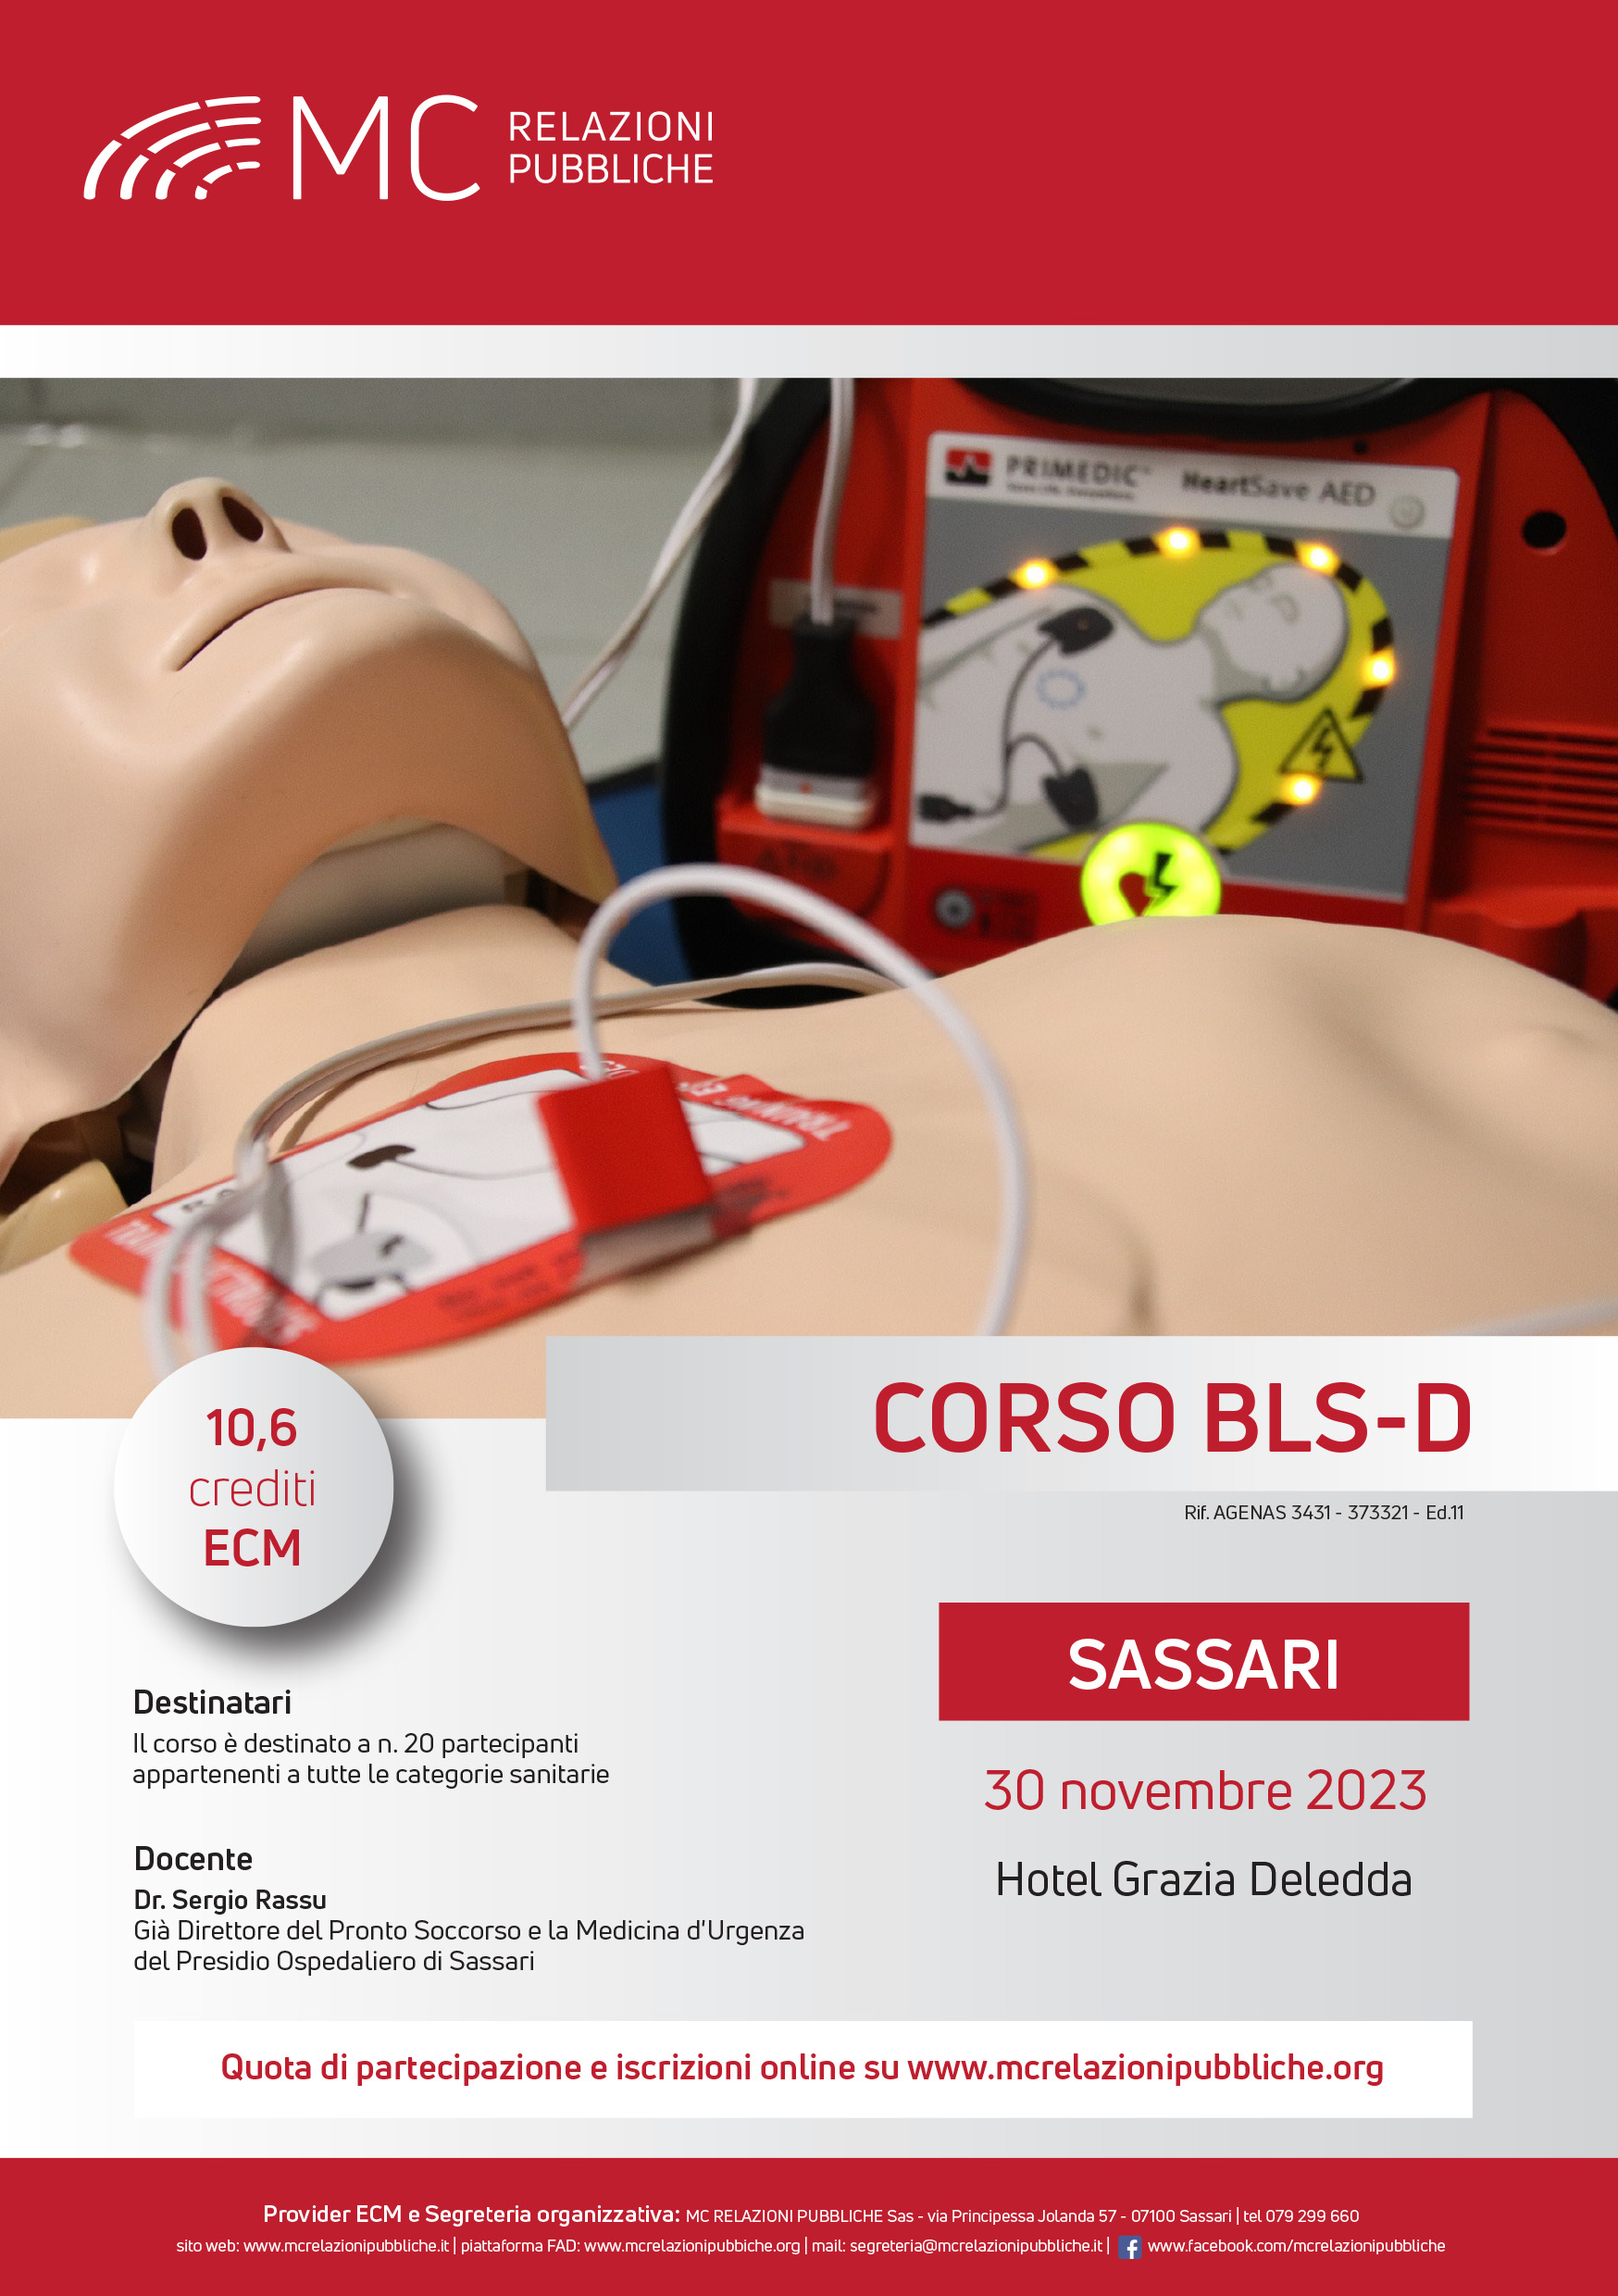 Corso BLS-D. Basic Life Support-Defibrillation - 30 novembre 2023